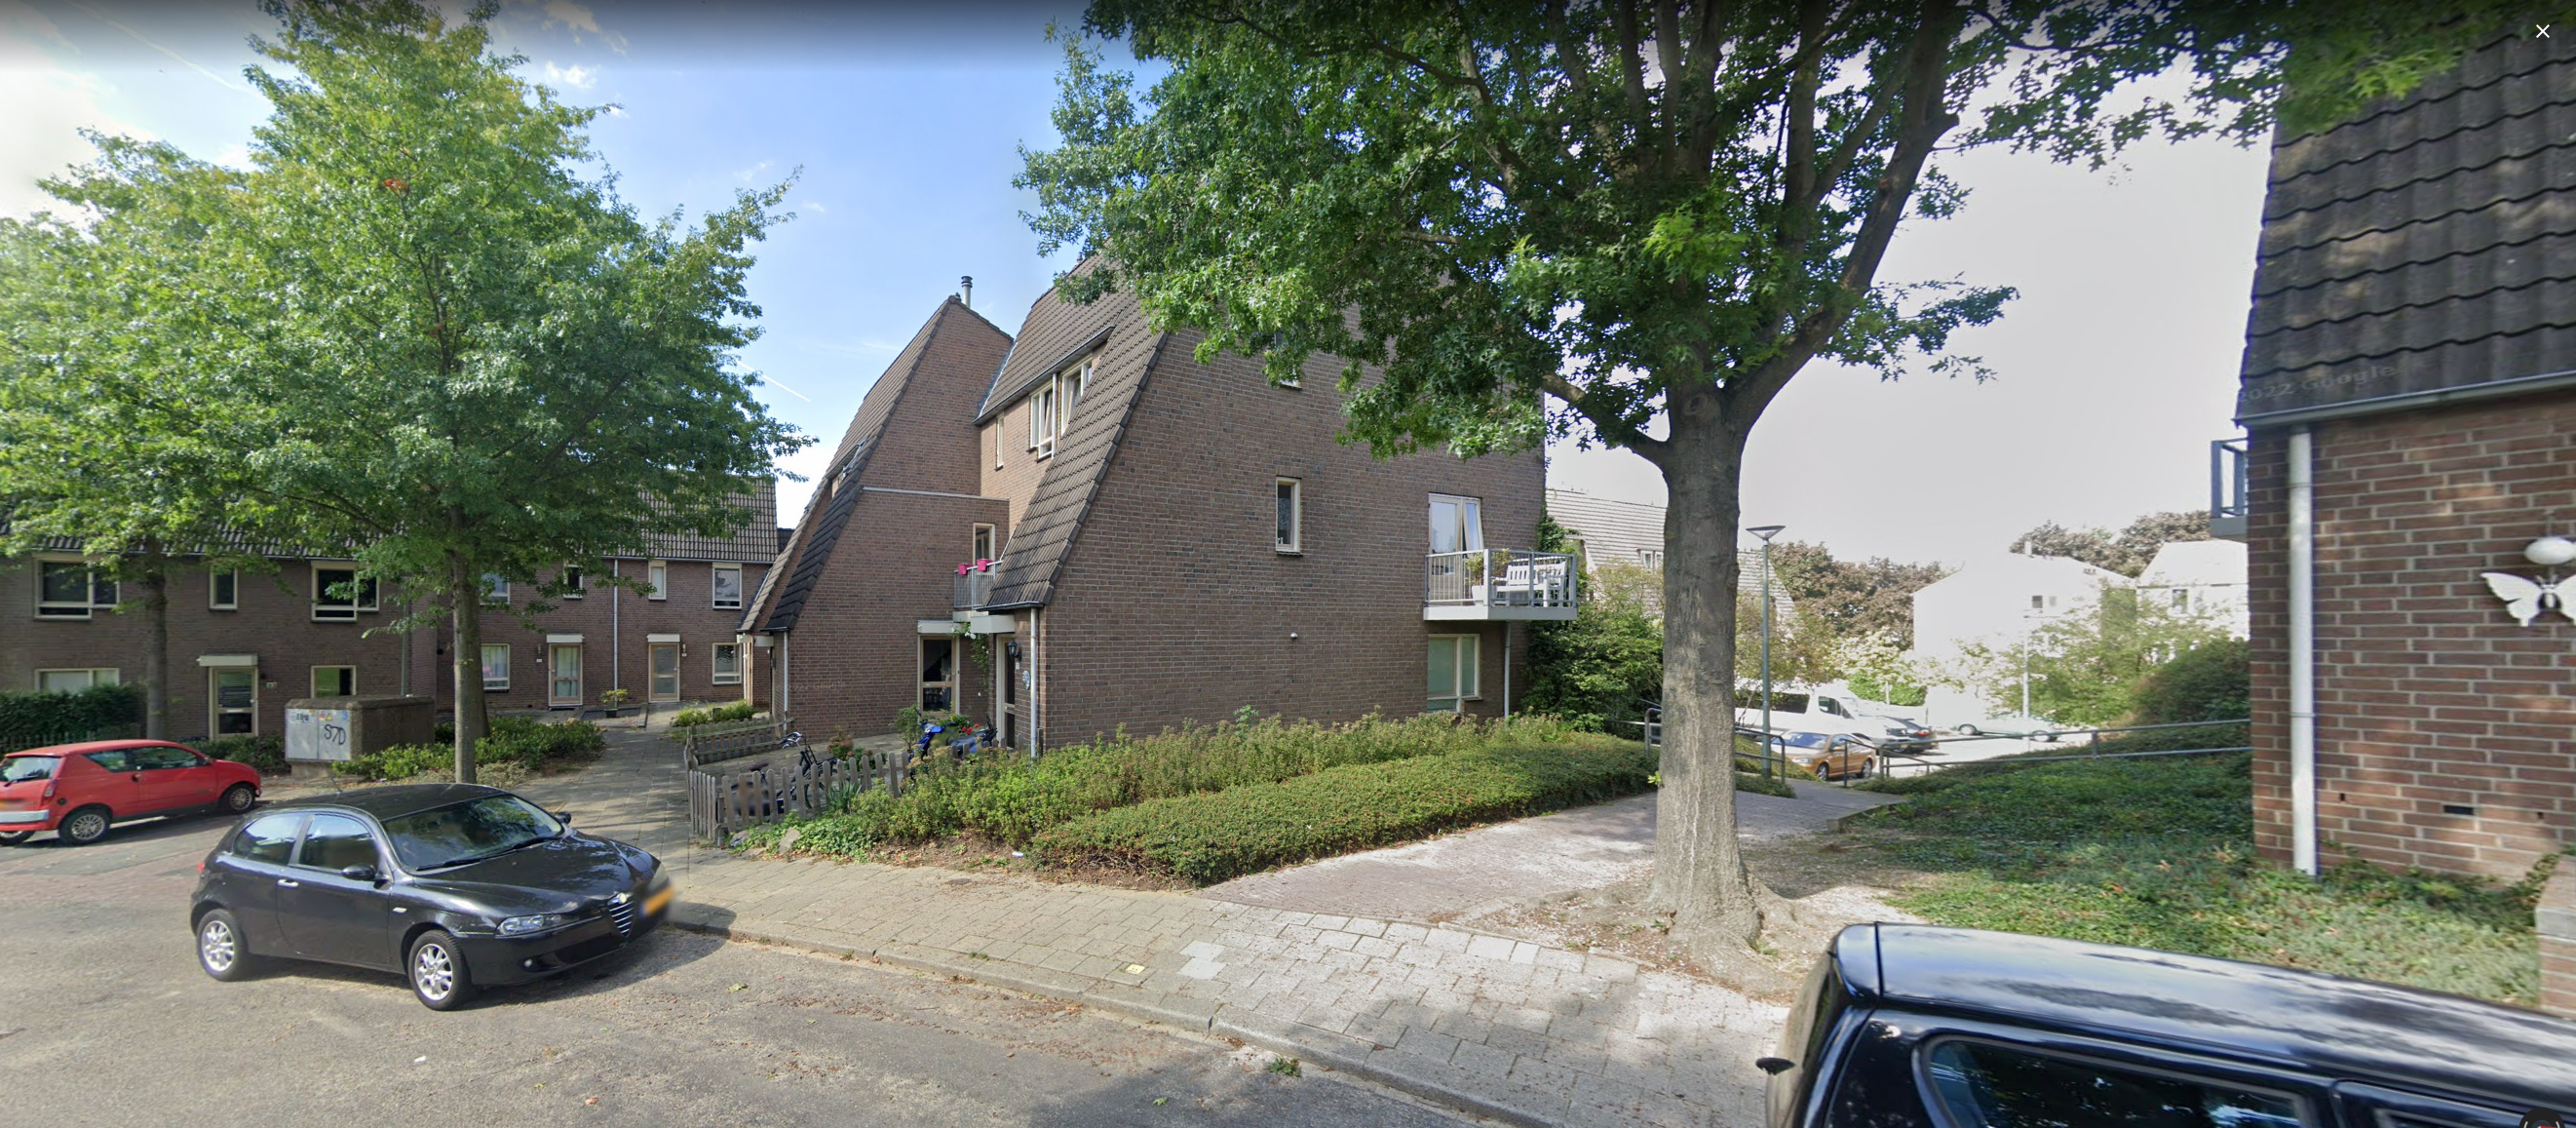 Tegelstraat 13, 6441 BW Brunssum, Nederland